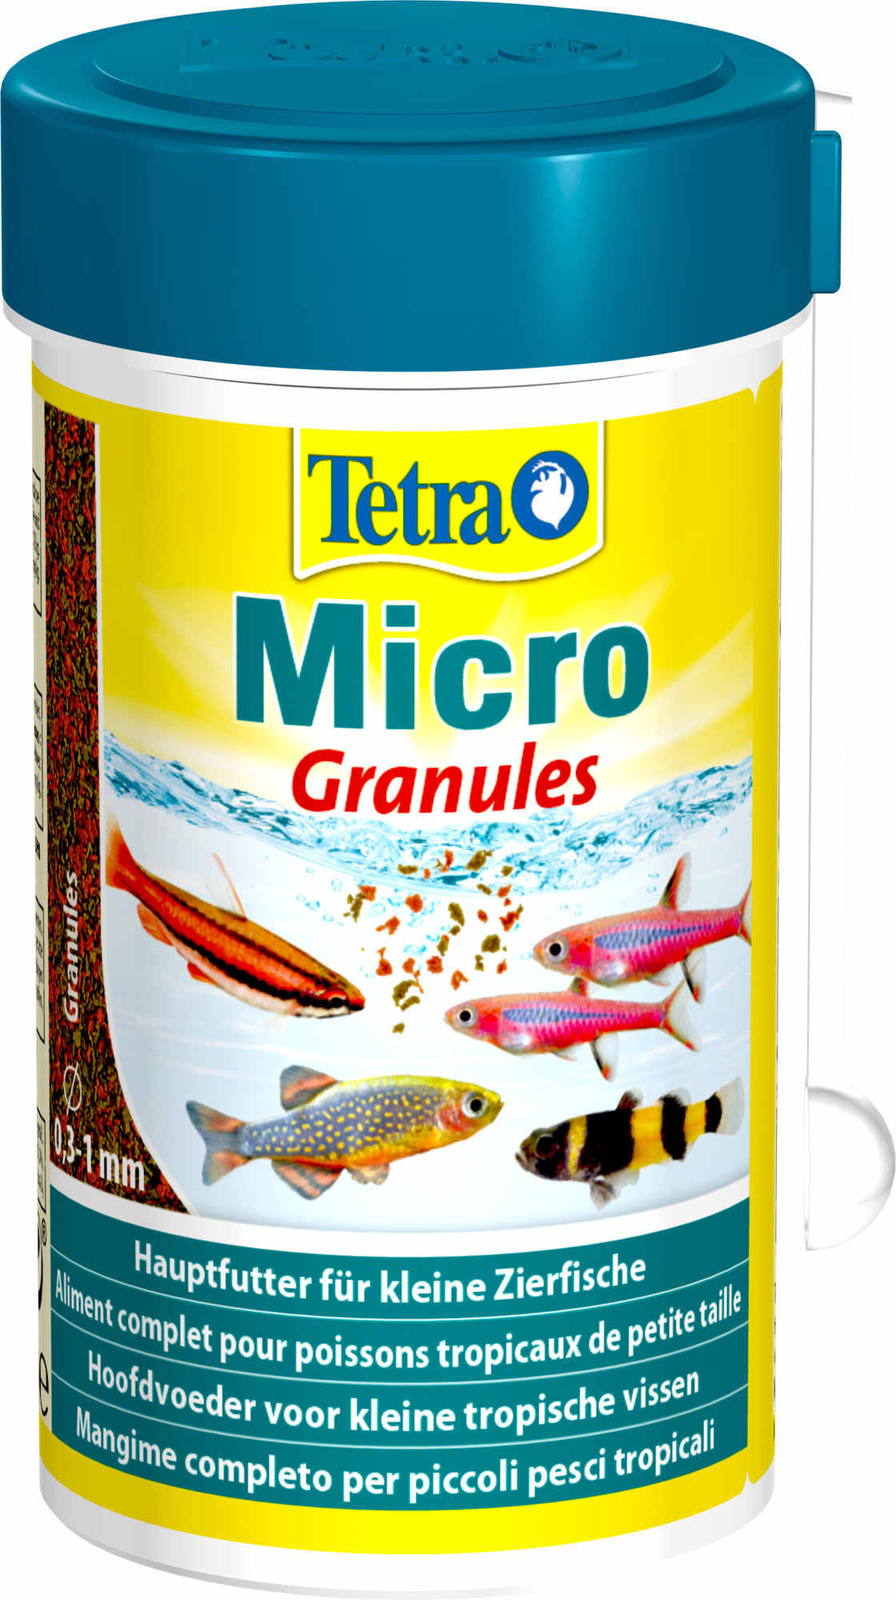 Tetra (корма) Tetra (корма) корм для всех видов мелких рыб, микрогранулы (45 г) tetra корма tetra корма корм для всех видов рыб хлопья 20 г